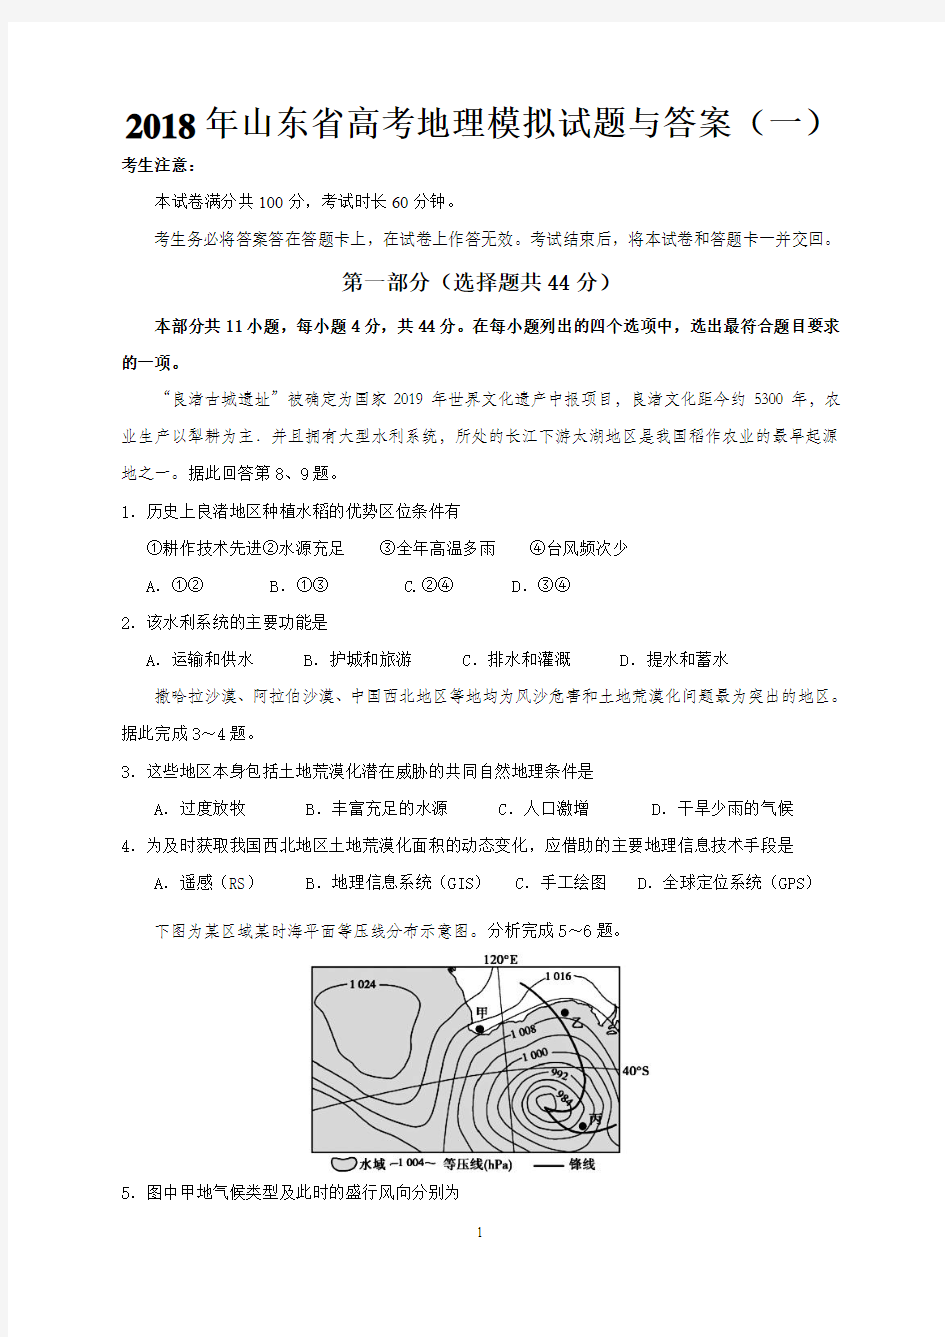 2019年山东省高考地理模拟试题与答案(一)